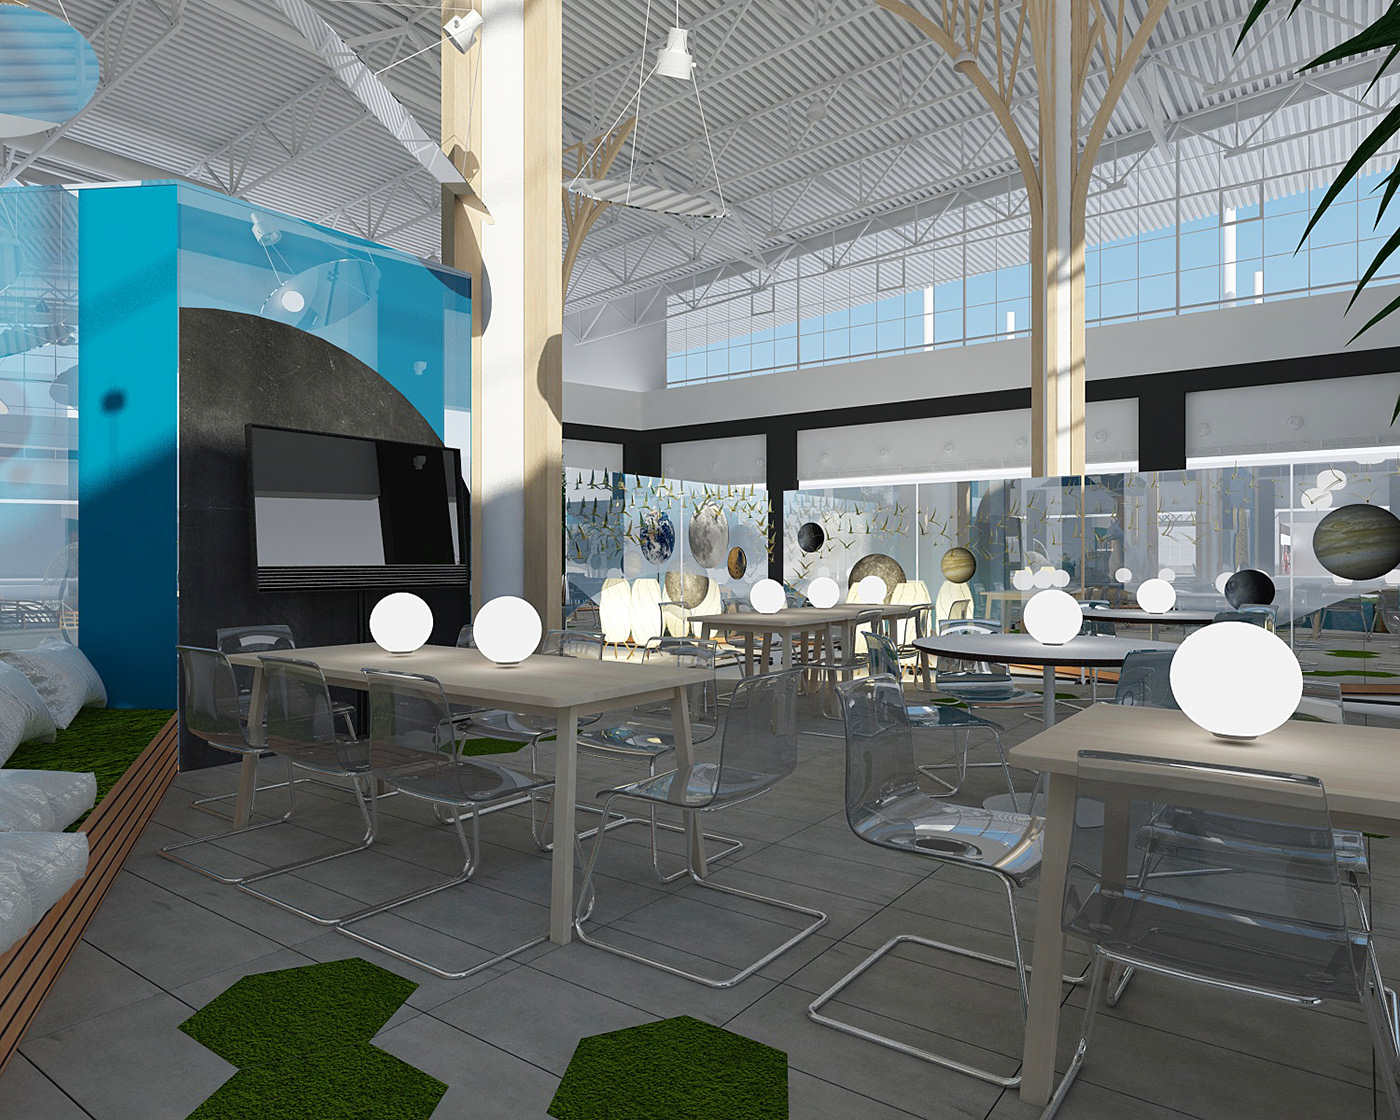 3D 3dmodel architecture interior design  INTERIOR RENDERING Public Interior Render visualization